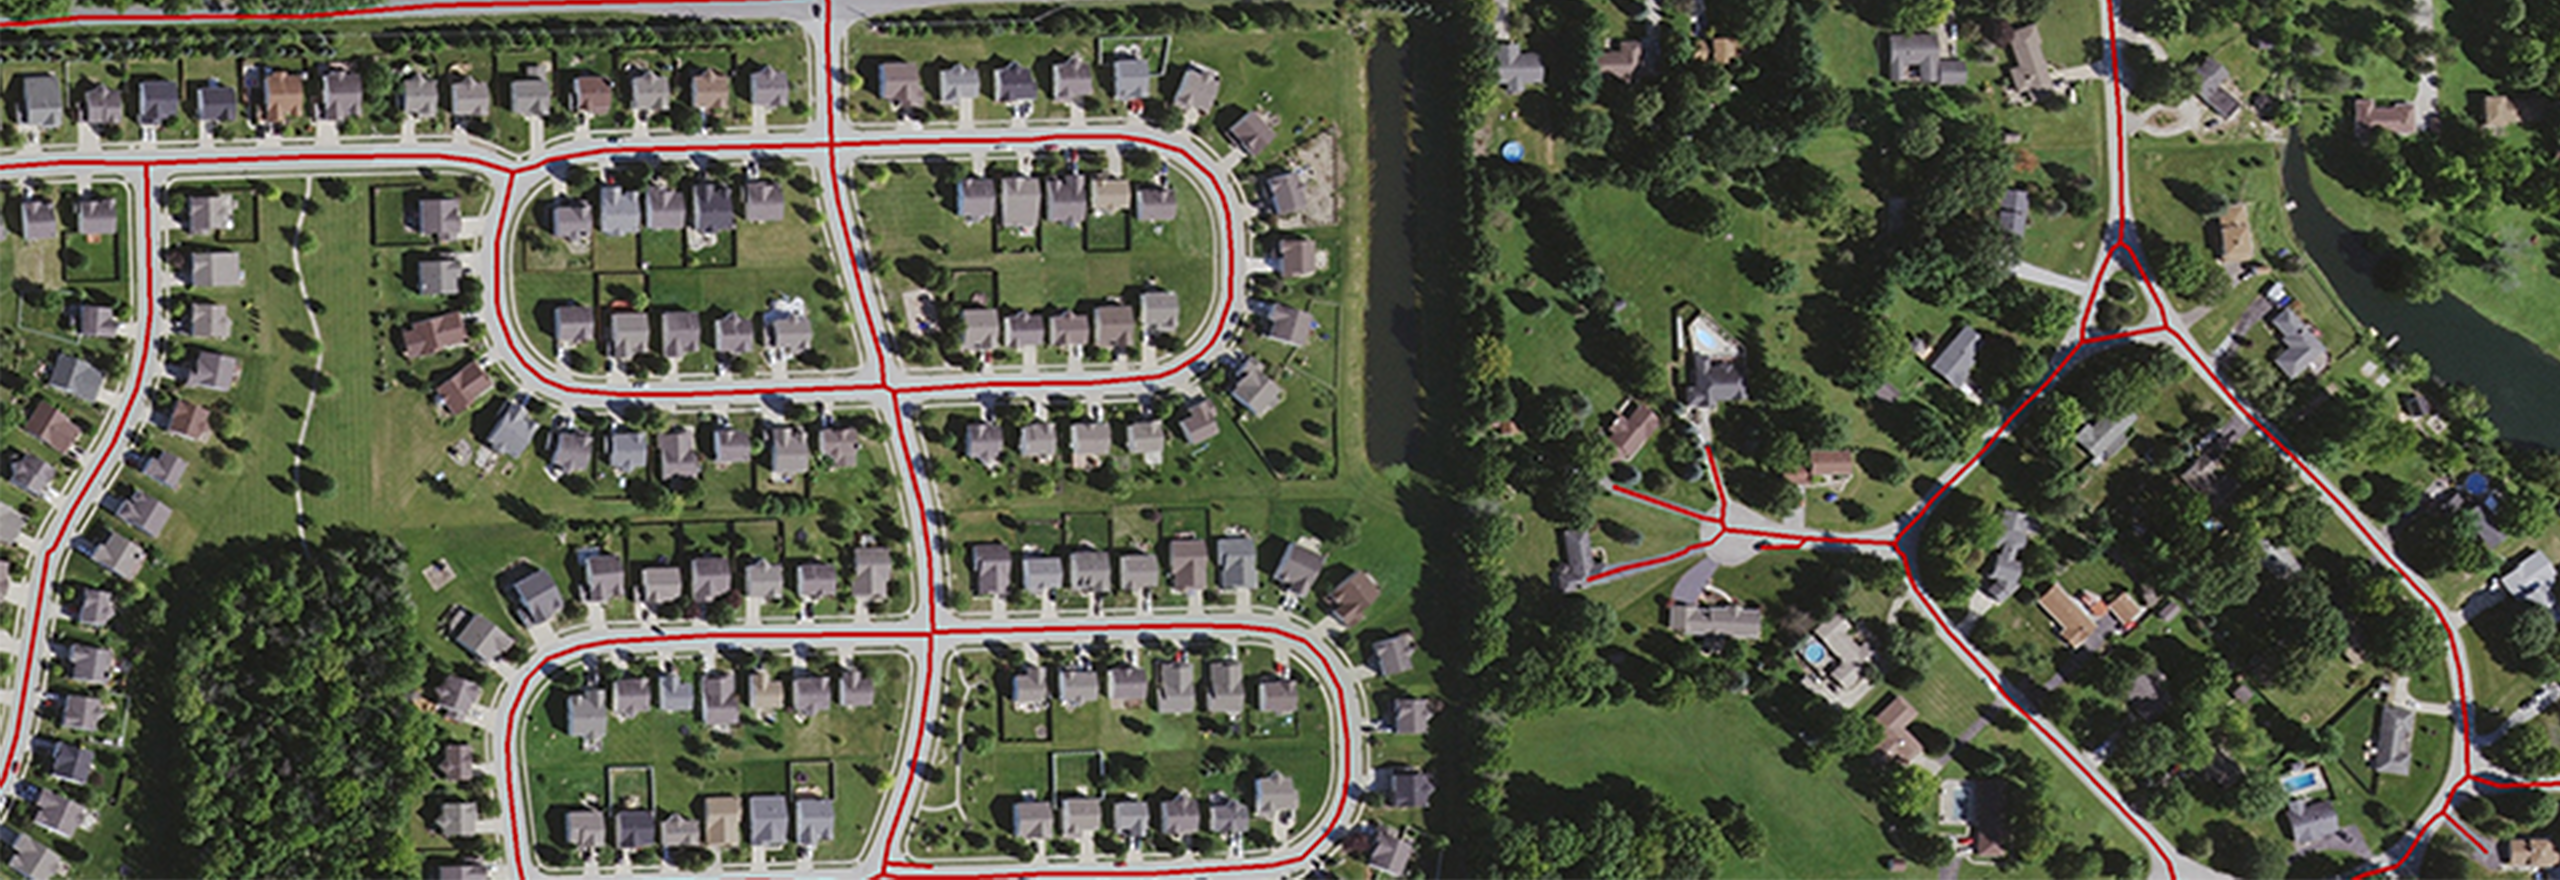 Analytische Luftbilddaten zum Straßenausbau